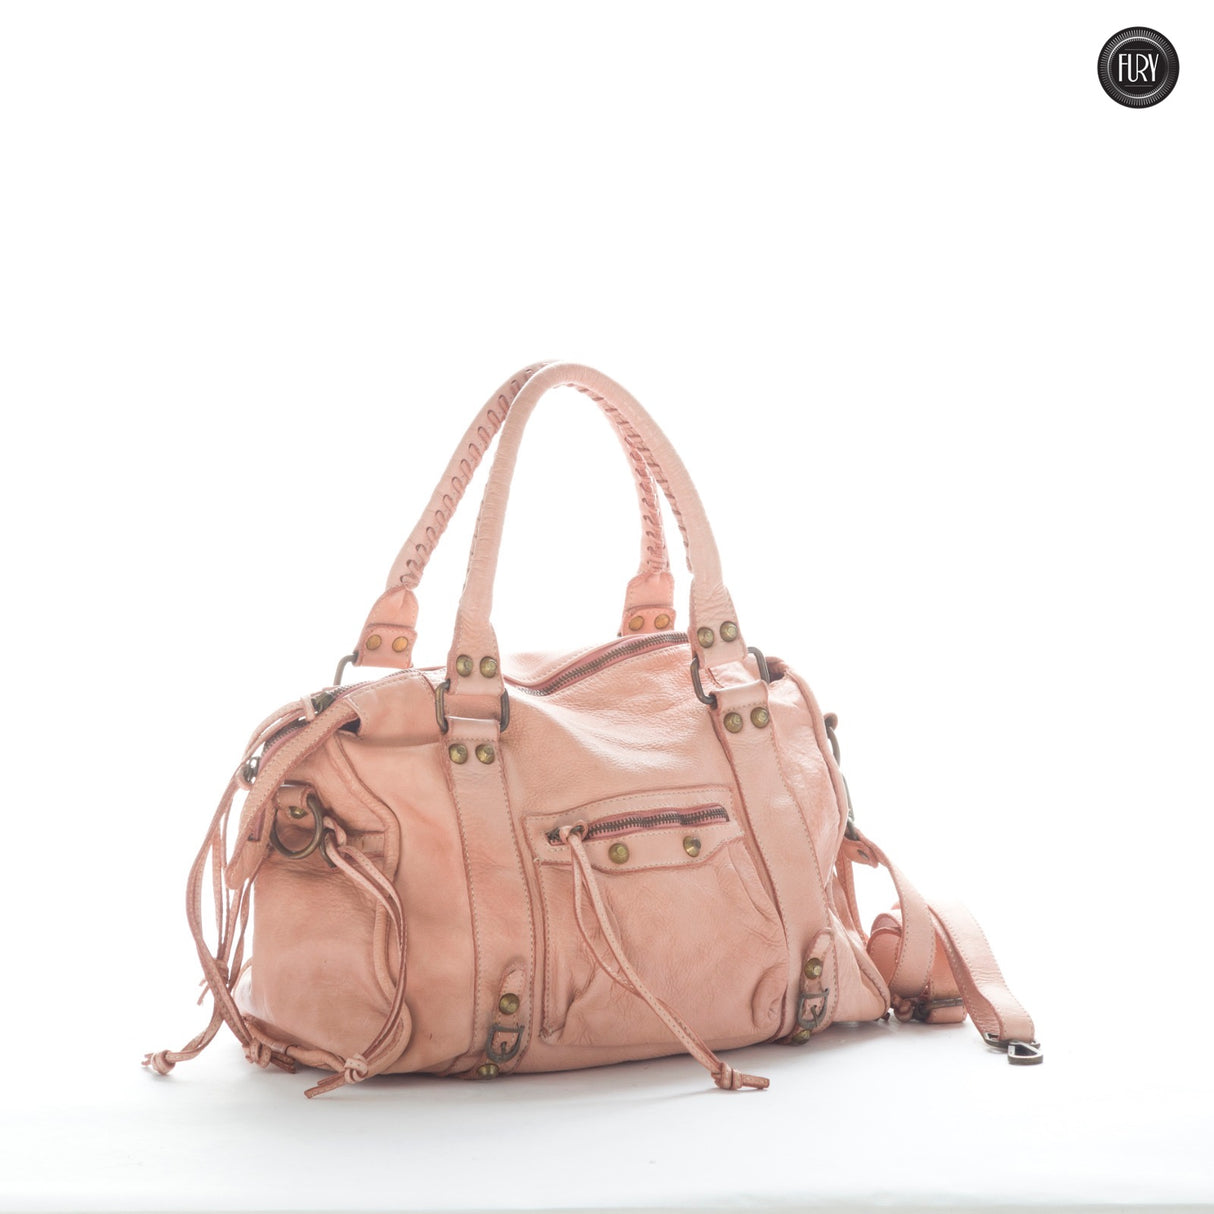 Geneva bag in leather